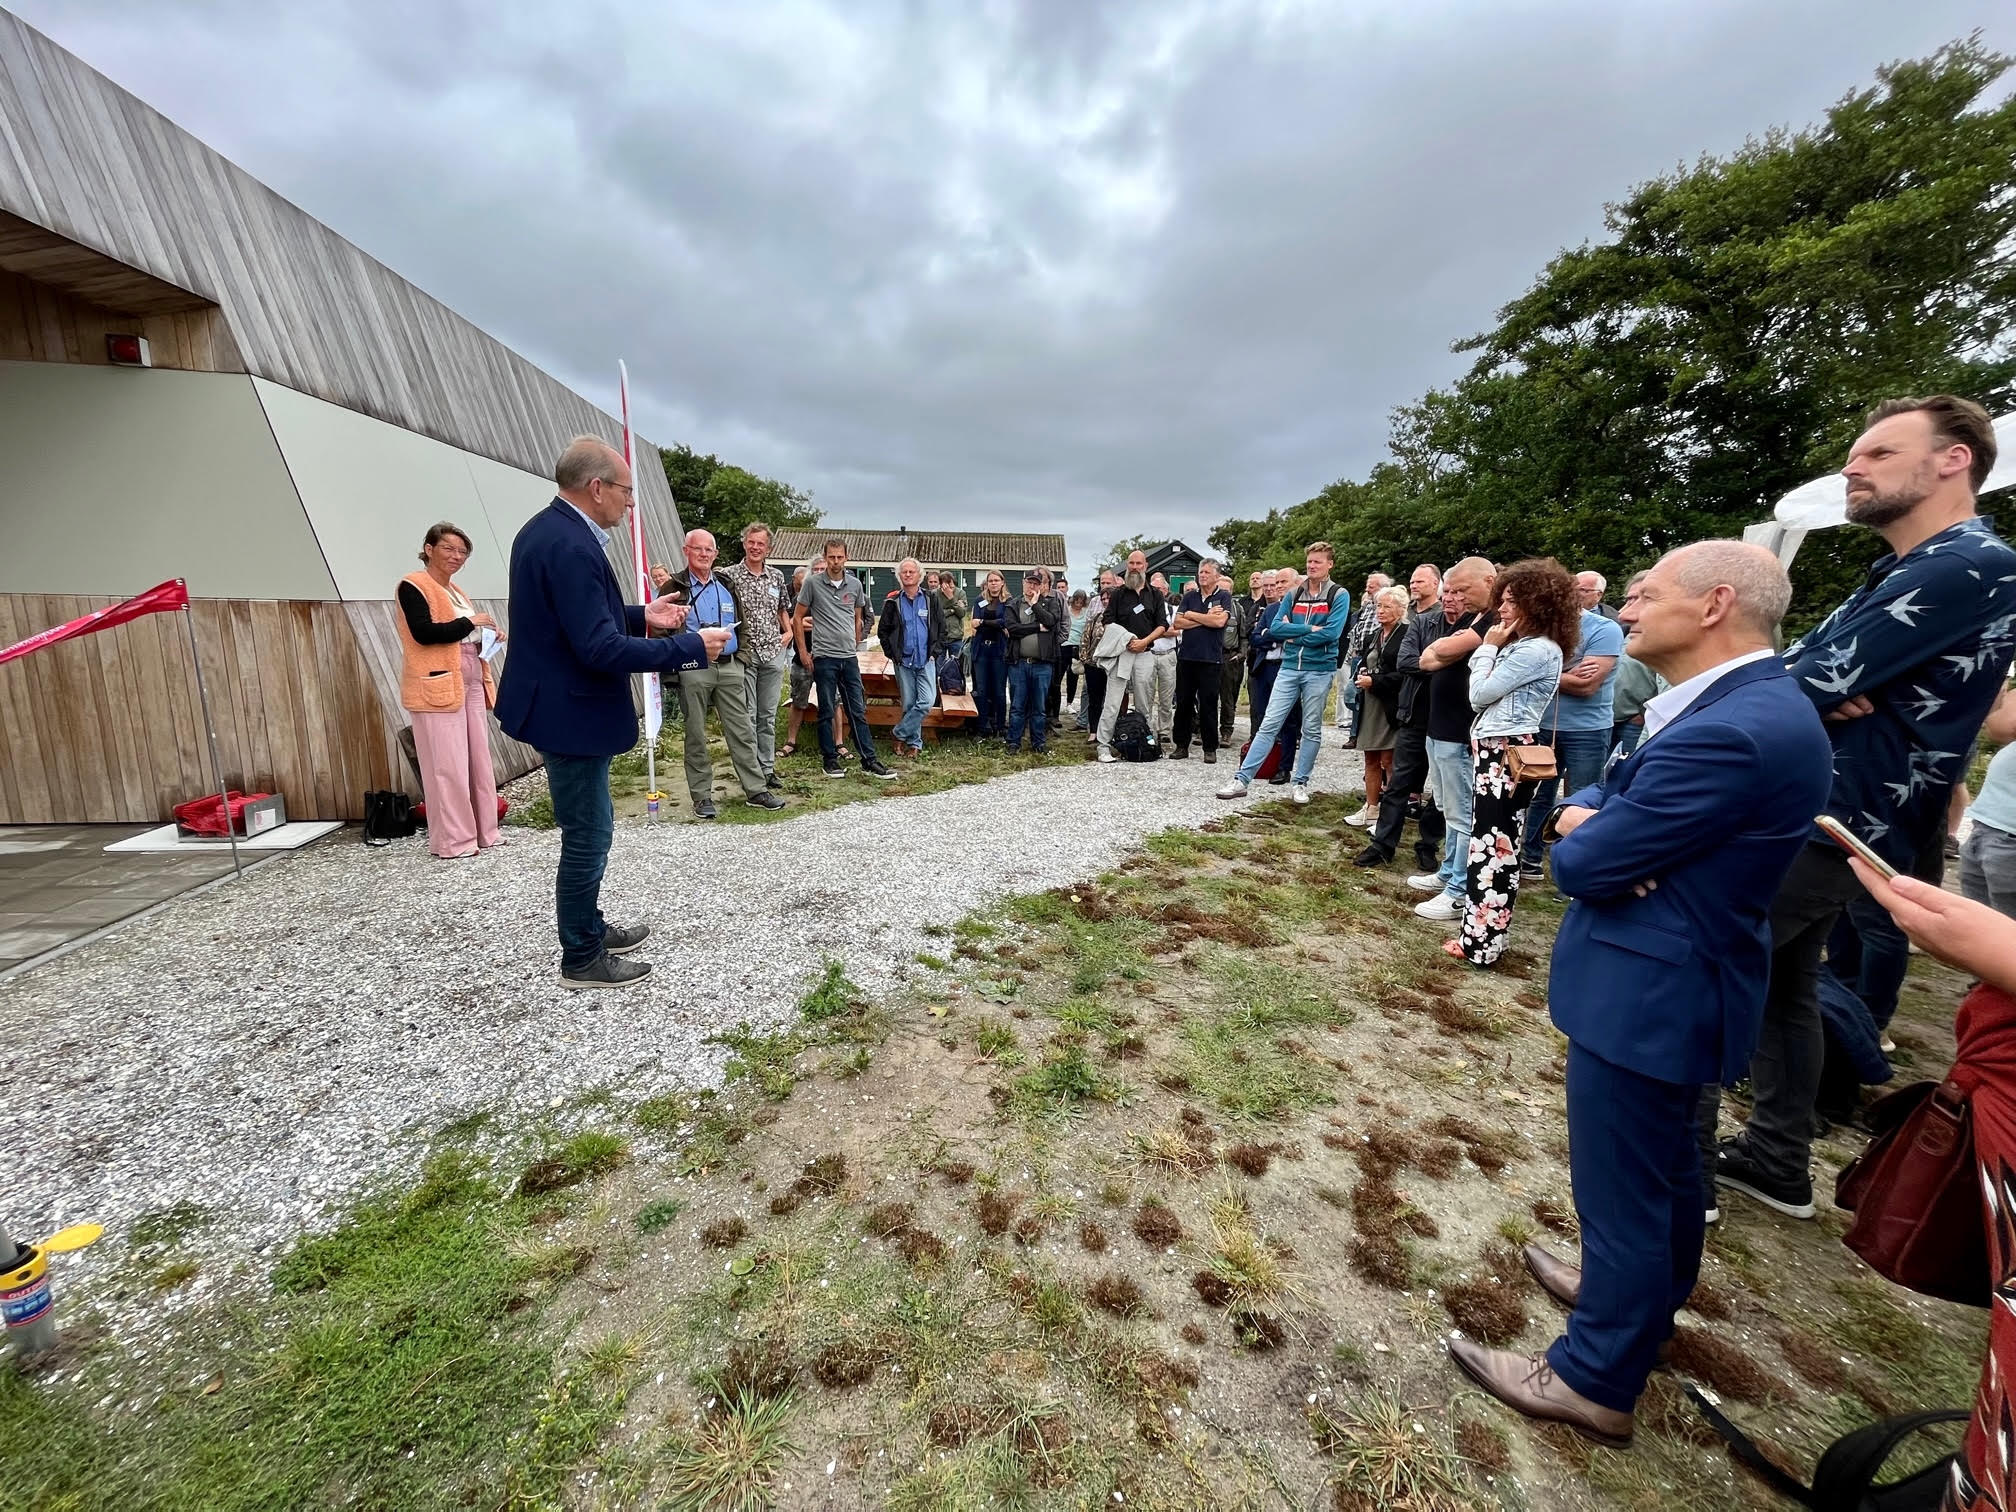 Loco burgemeester Johan Hagen van Schiermonnikoog noemt de Herdershut een aanwinst voor het eilandDeputy mayor Johan Hagen of Schiermonnikoog